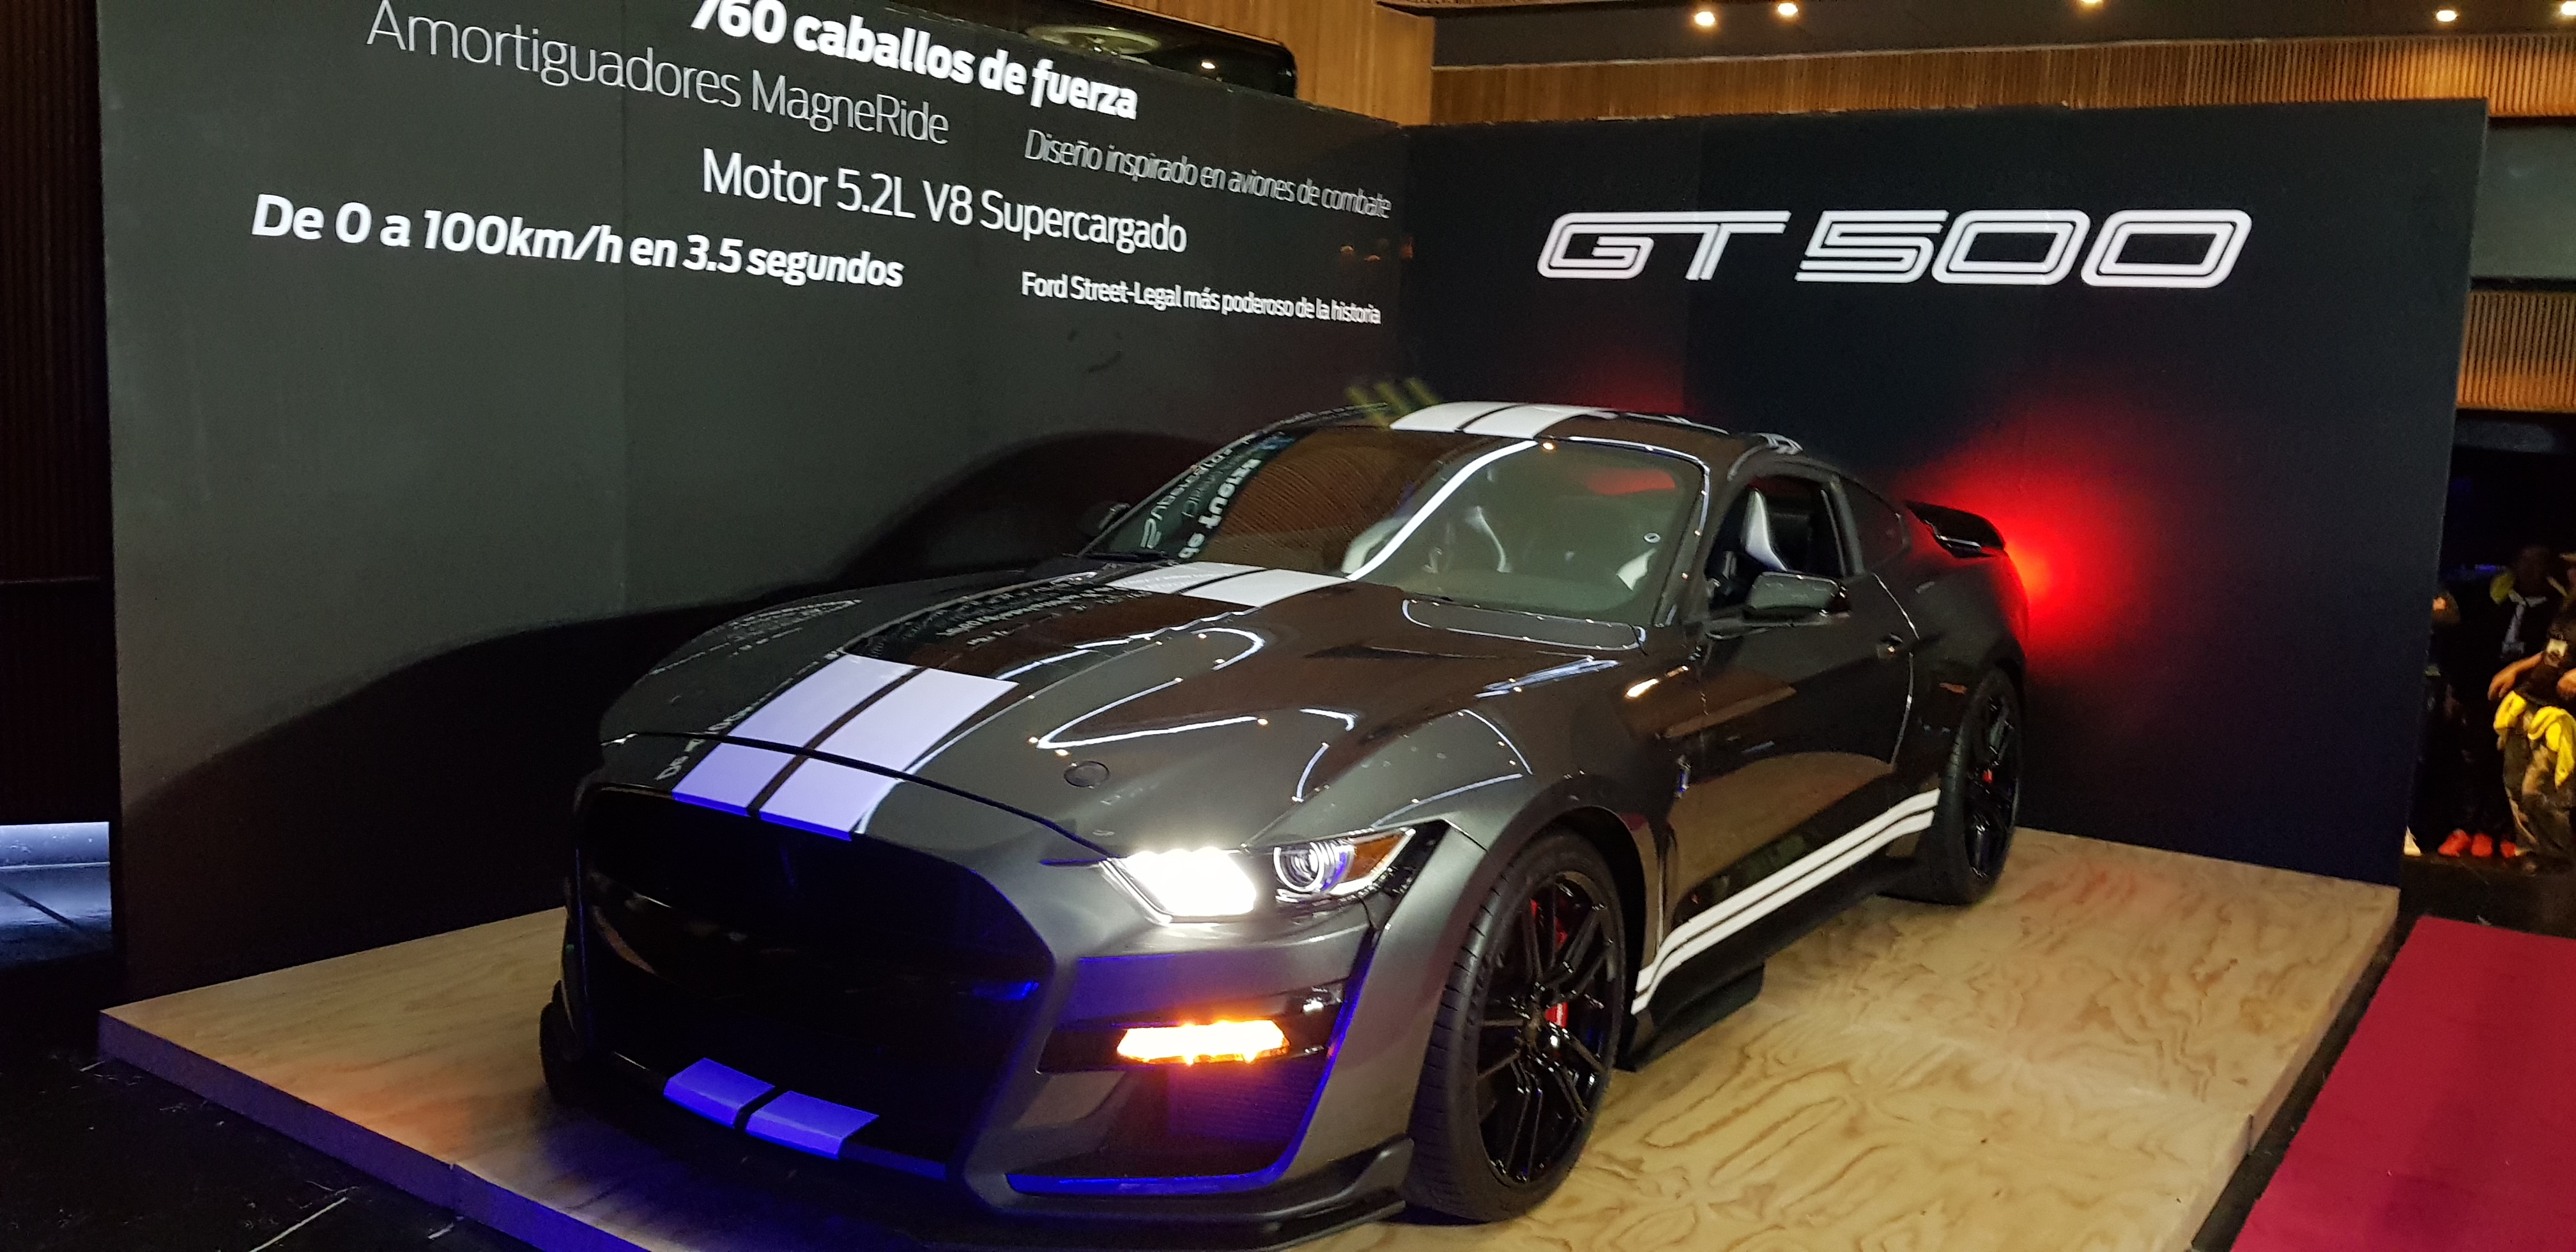 El nuevo Ford Mustang Shelby GT500 ofrecerá 760 caballos de potencia